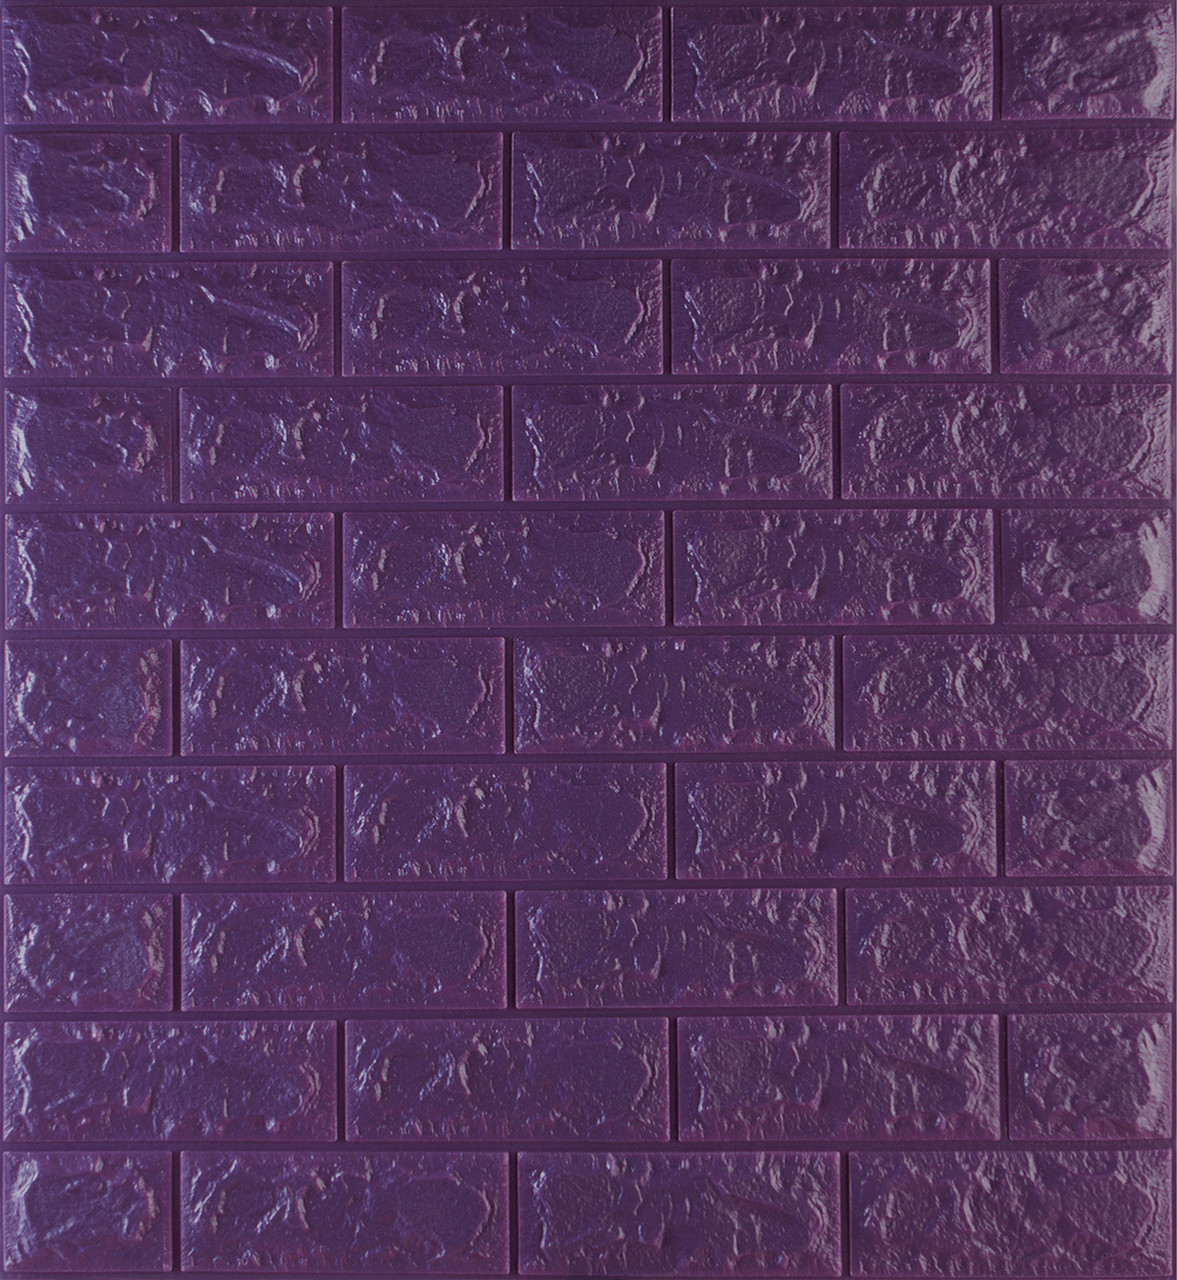 Самоклеющаяся декоративная 3D панель под фиолетовый кирпич 700x770x7мм